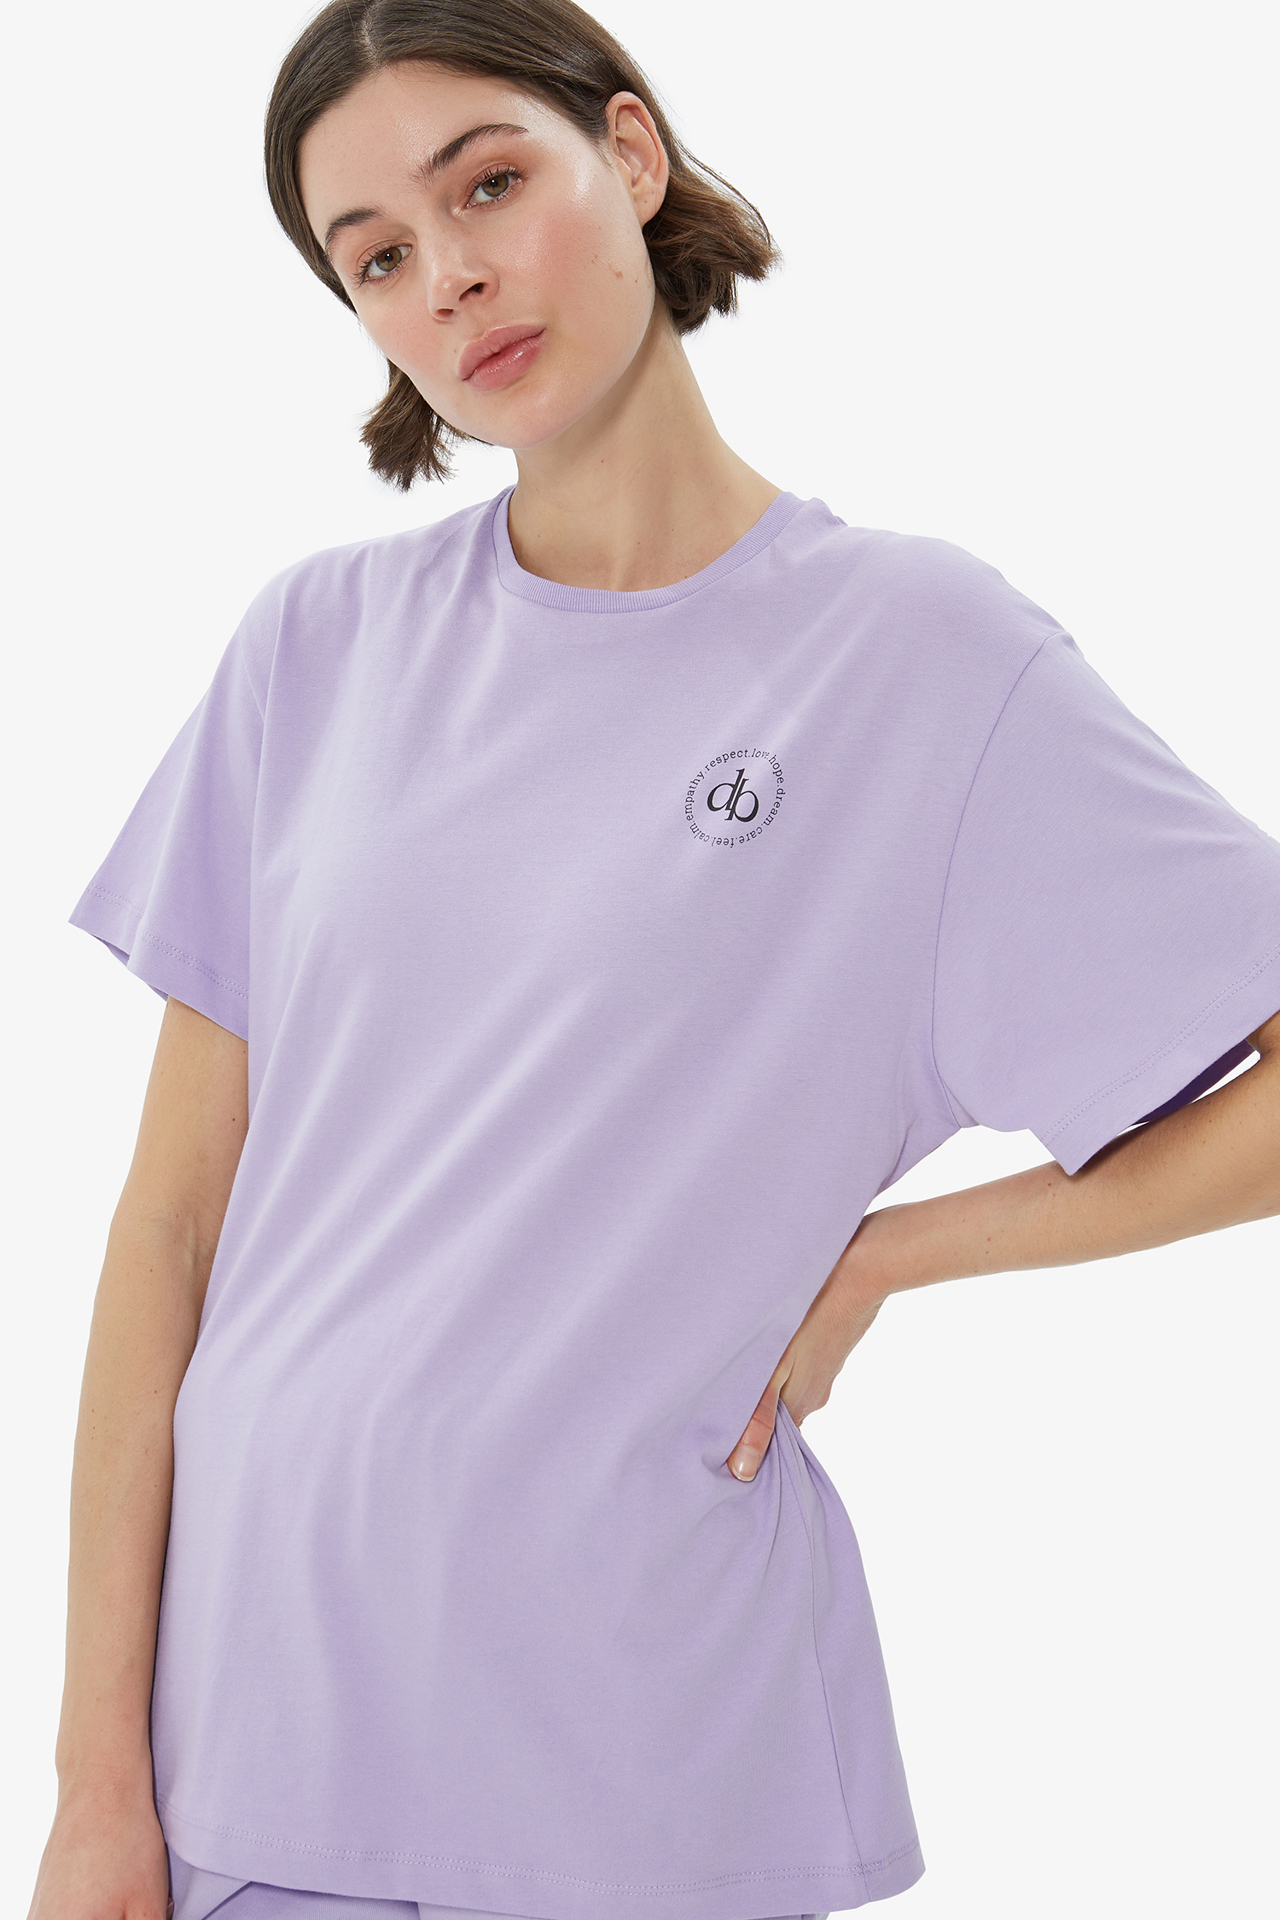 Dahlia Bianca | T-Shirt Pre Printed - Lilac - Tshirt